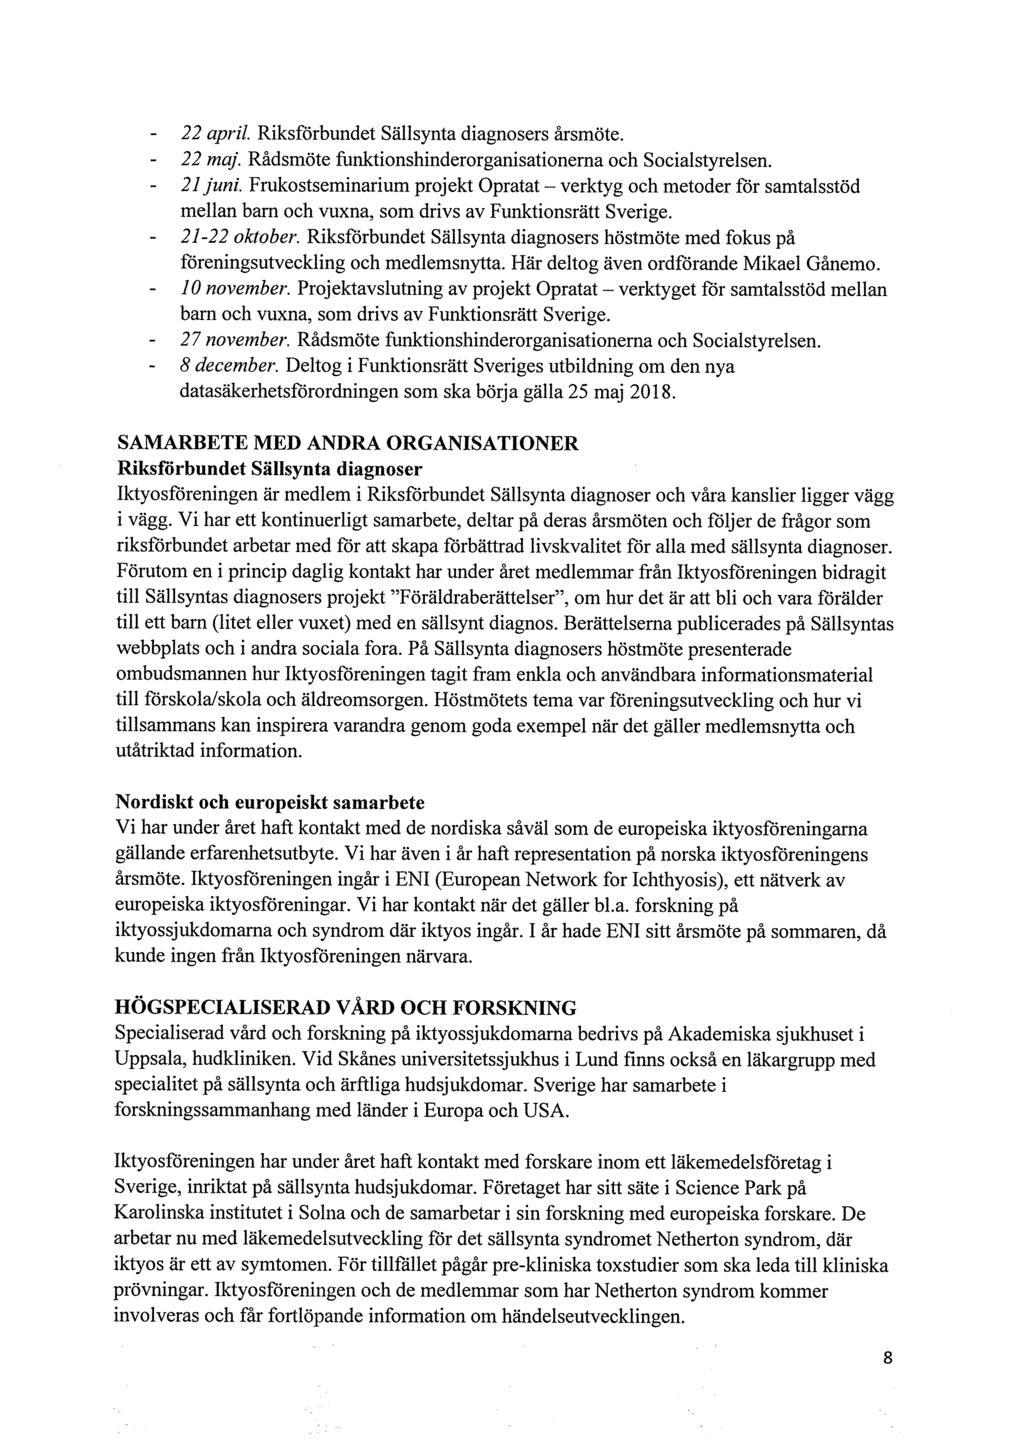 22 april. Riksförbundet Sällsynta diagnosers årsmöte. 22 maj. Rådsmöte funktionshinderorganisationema och Socialstyrelsen. 21 juni.